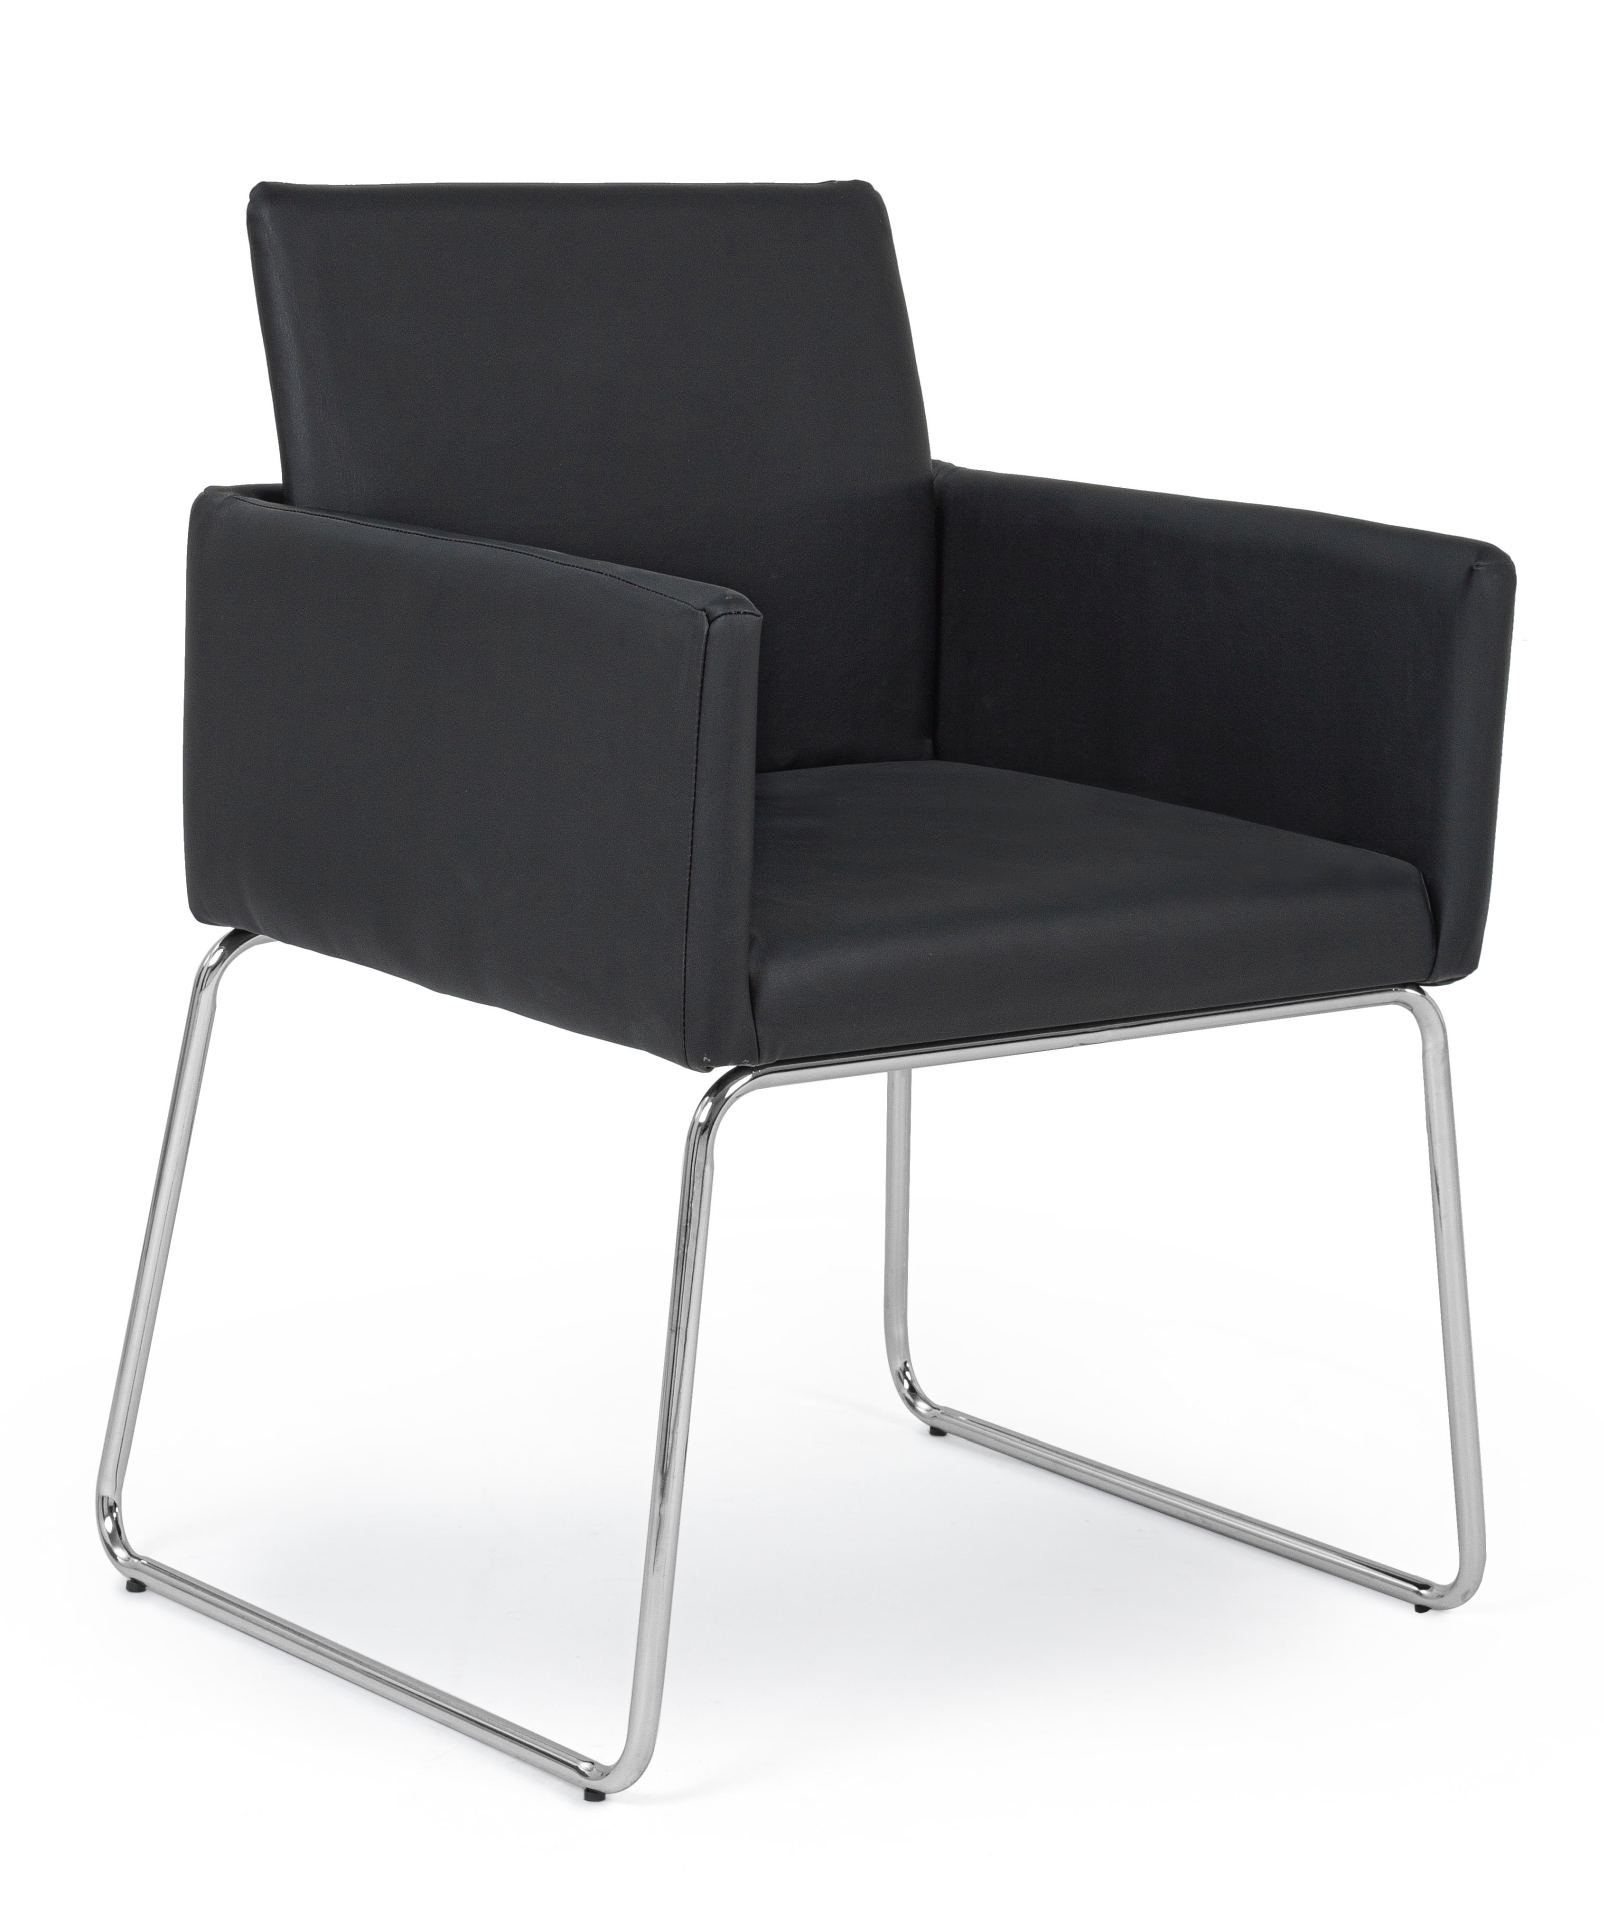 Der Esszimmerstuhl Sixty überzeugt mit seinem modernem Design. Gefertigt wurde der Stuhl aus Kunststoff-Bezug welcher einen schwarzen Farbton besitzt. Das Gestell ist aus Metall und ist Silber. Die Sitzhöhe beträgt 48 cm.